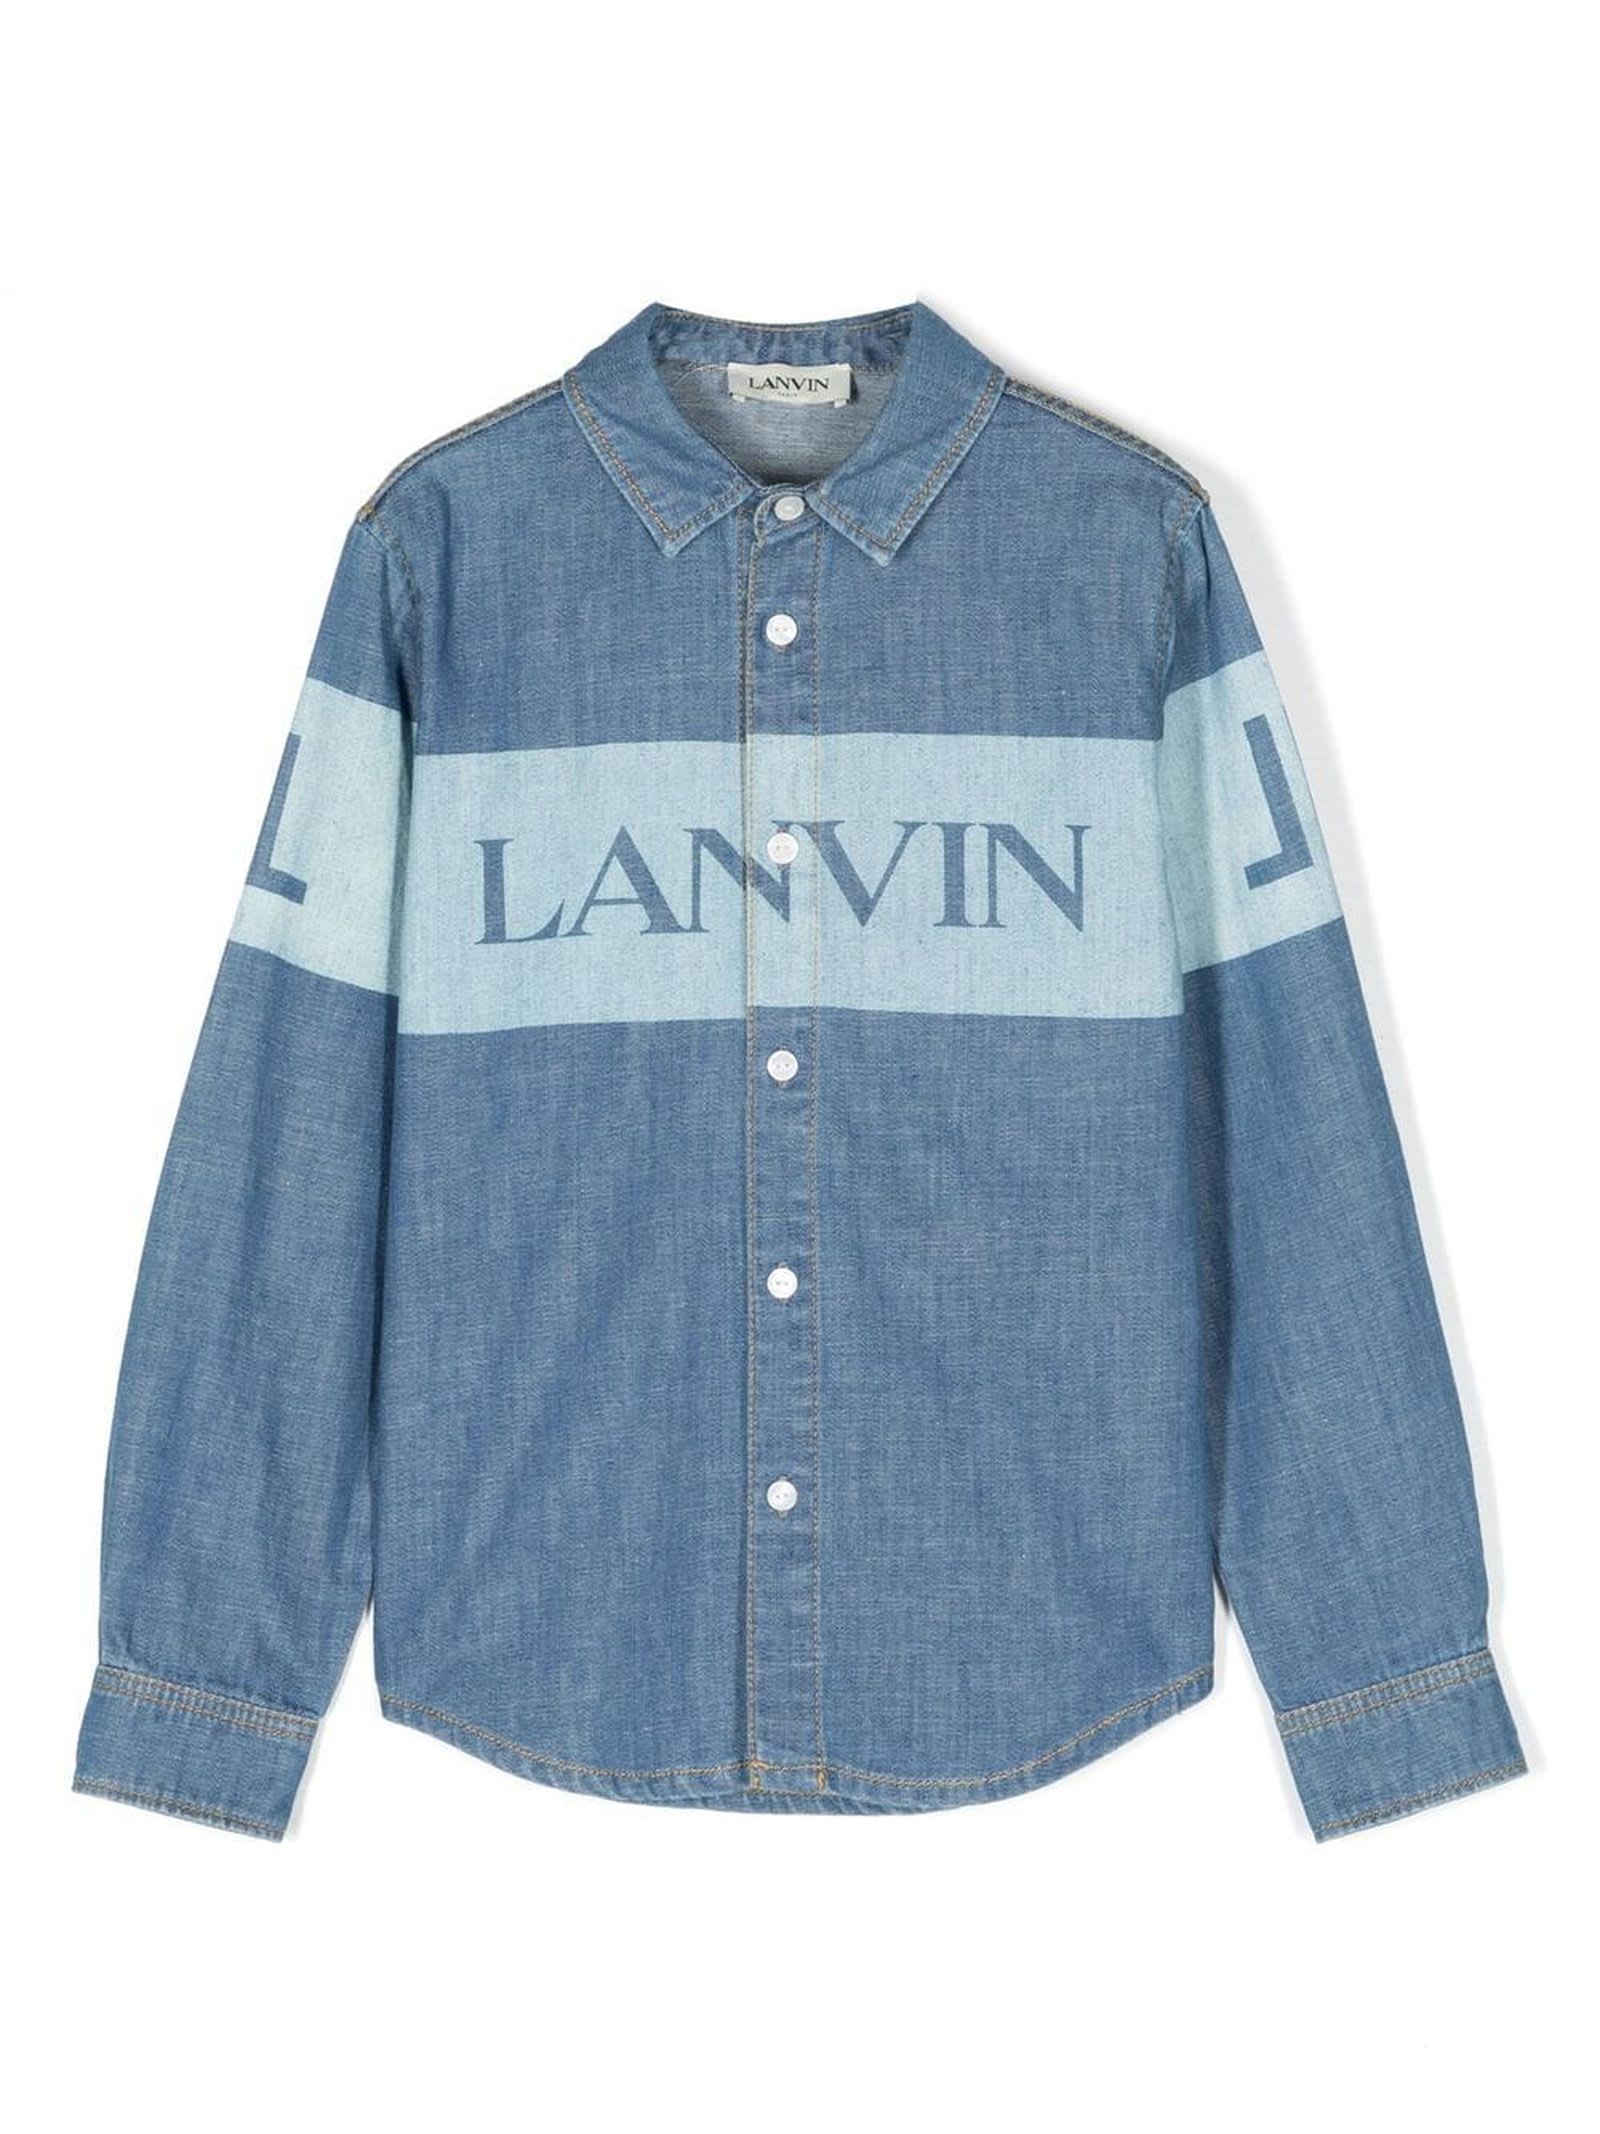 Lanvin Kids' Blue Cotton Shirt In Jeans